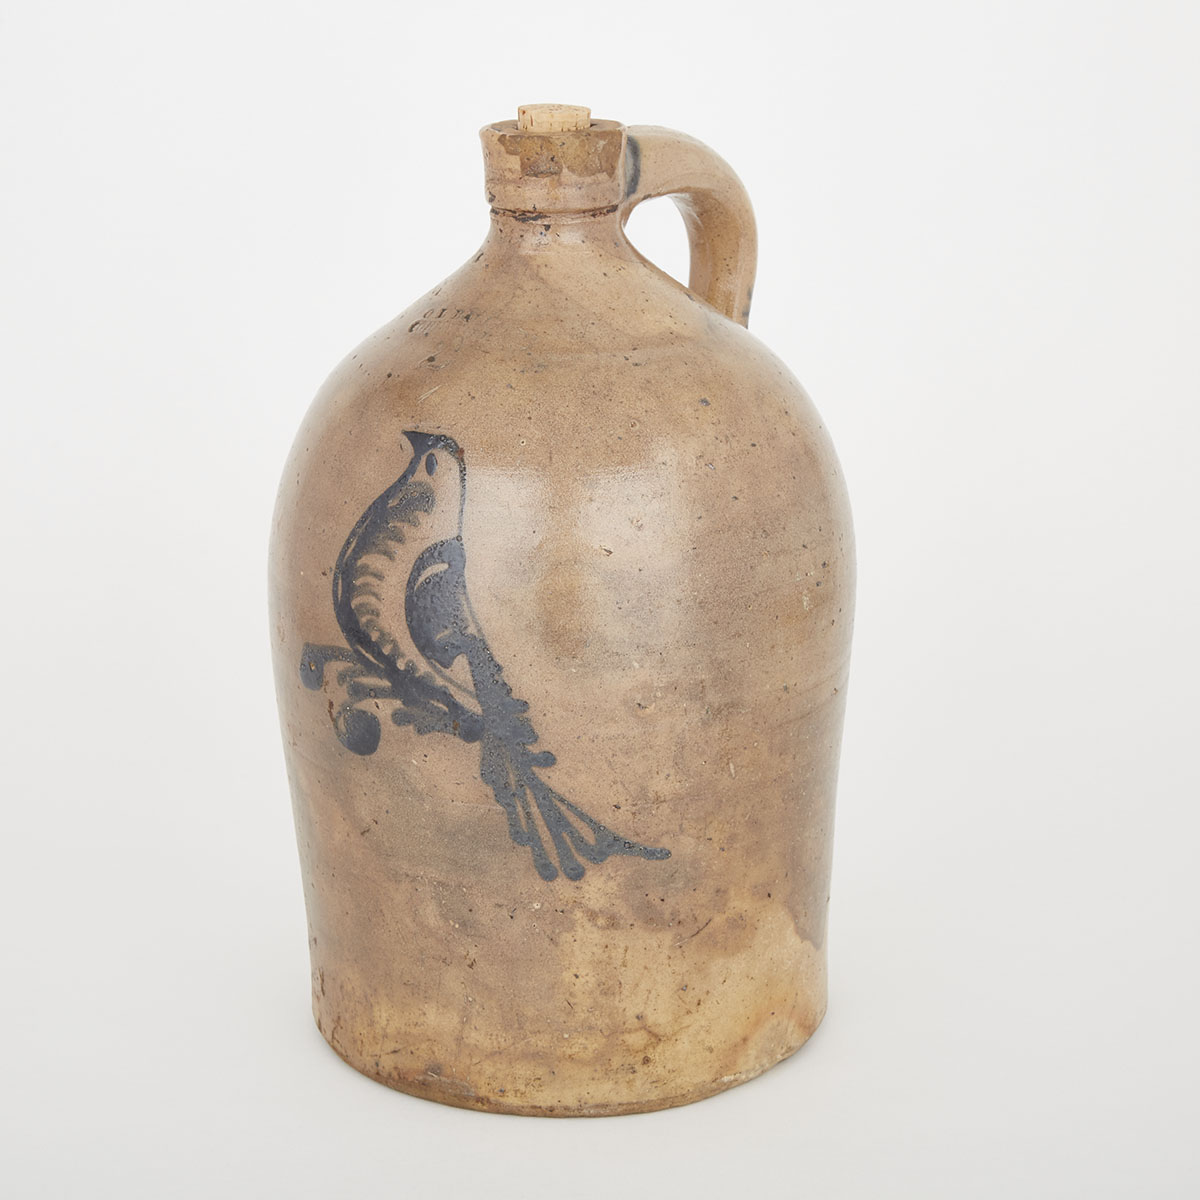 Canada West Two-Gallon Salt Glazed Stoneware Jug, O.L. Ballard, Cornwall, early 19th century